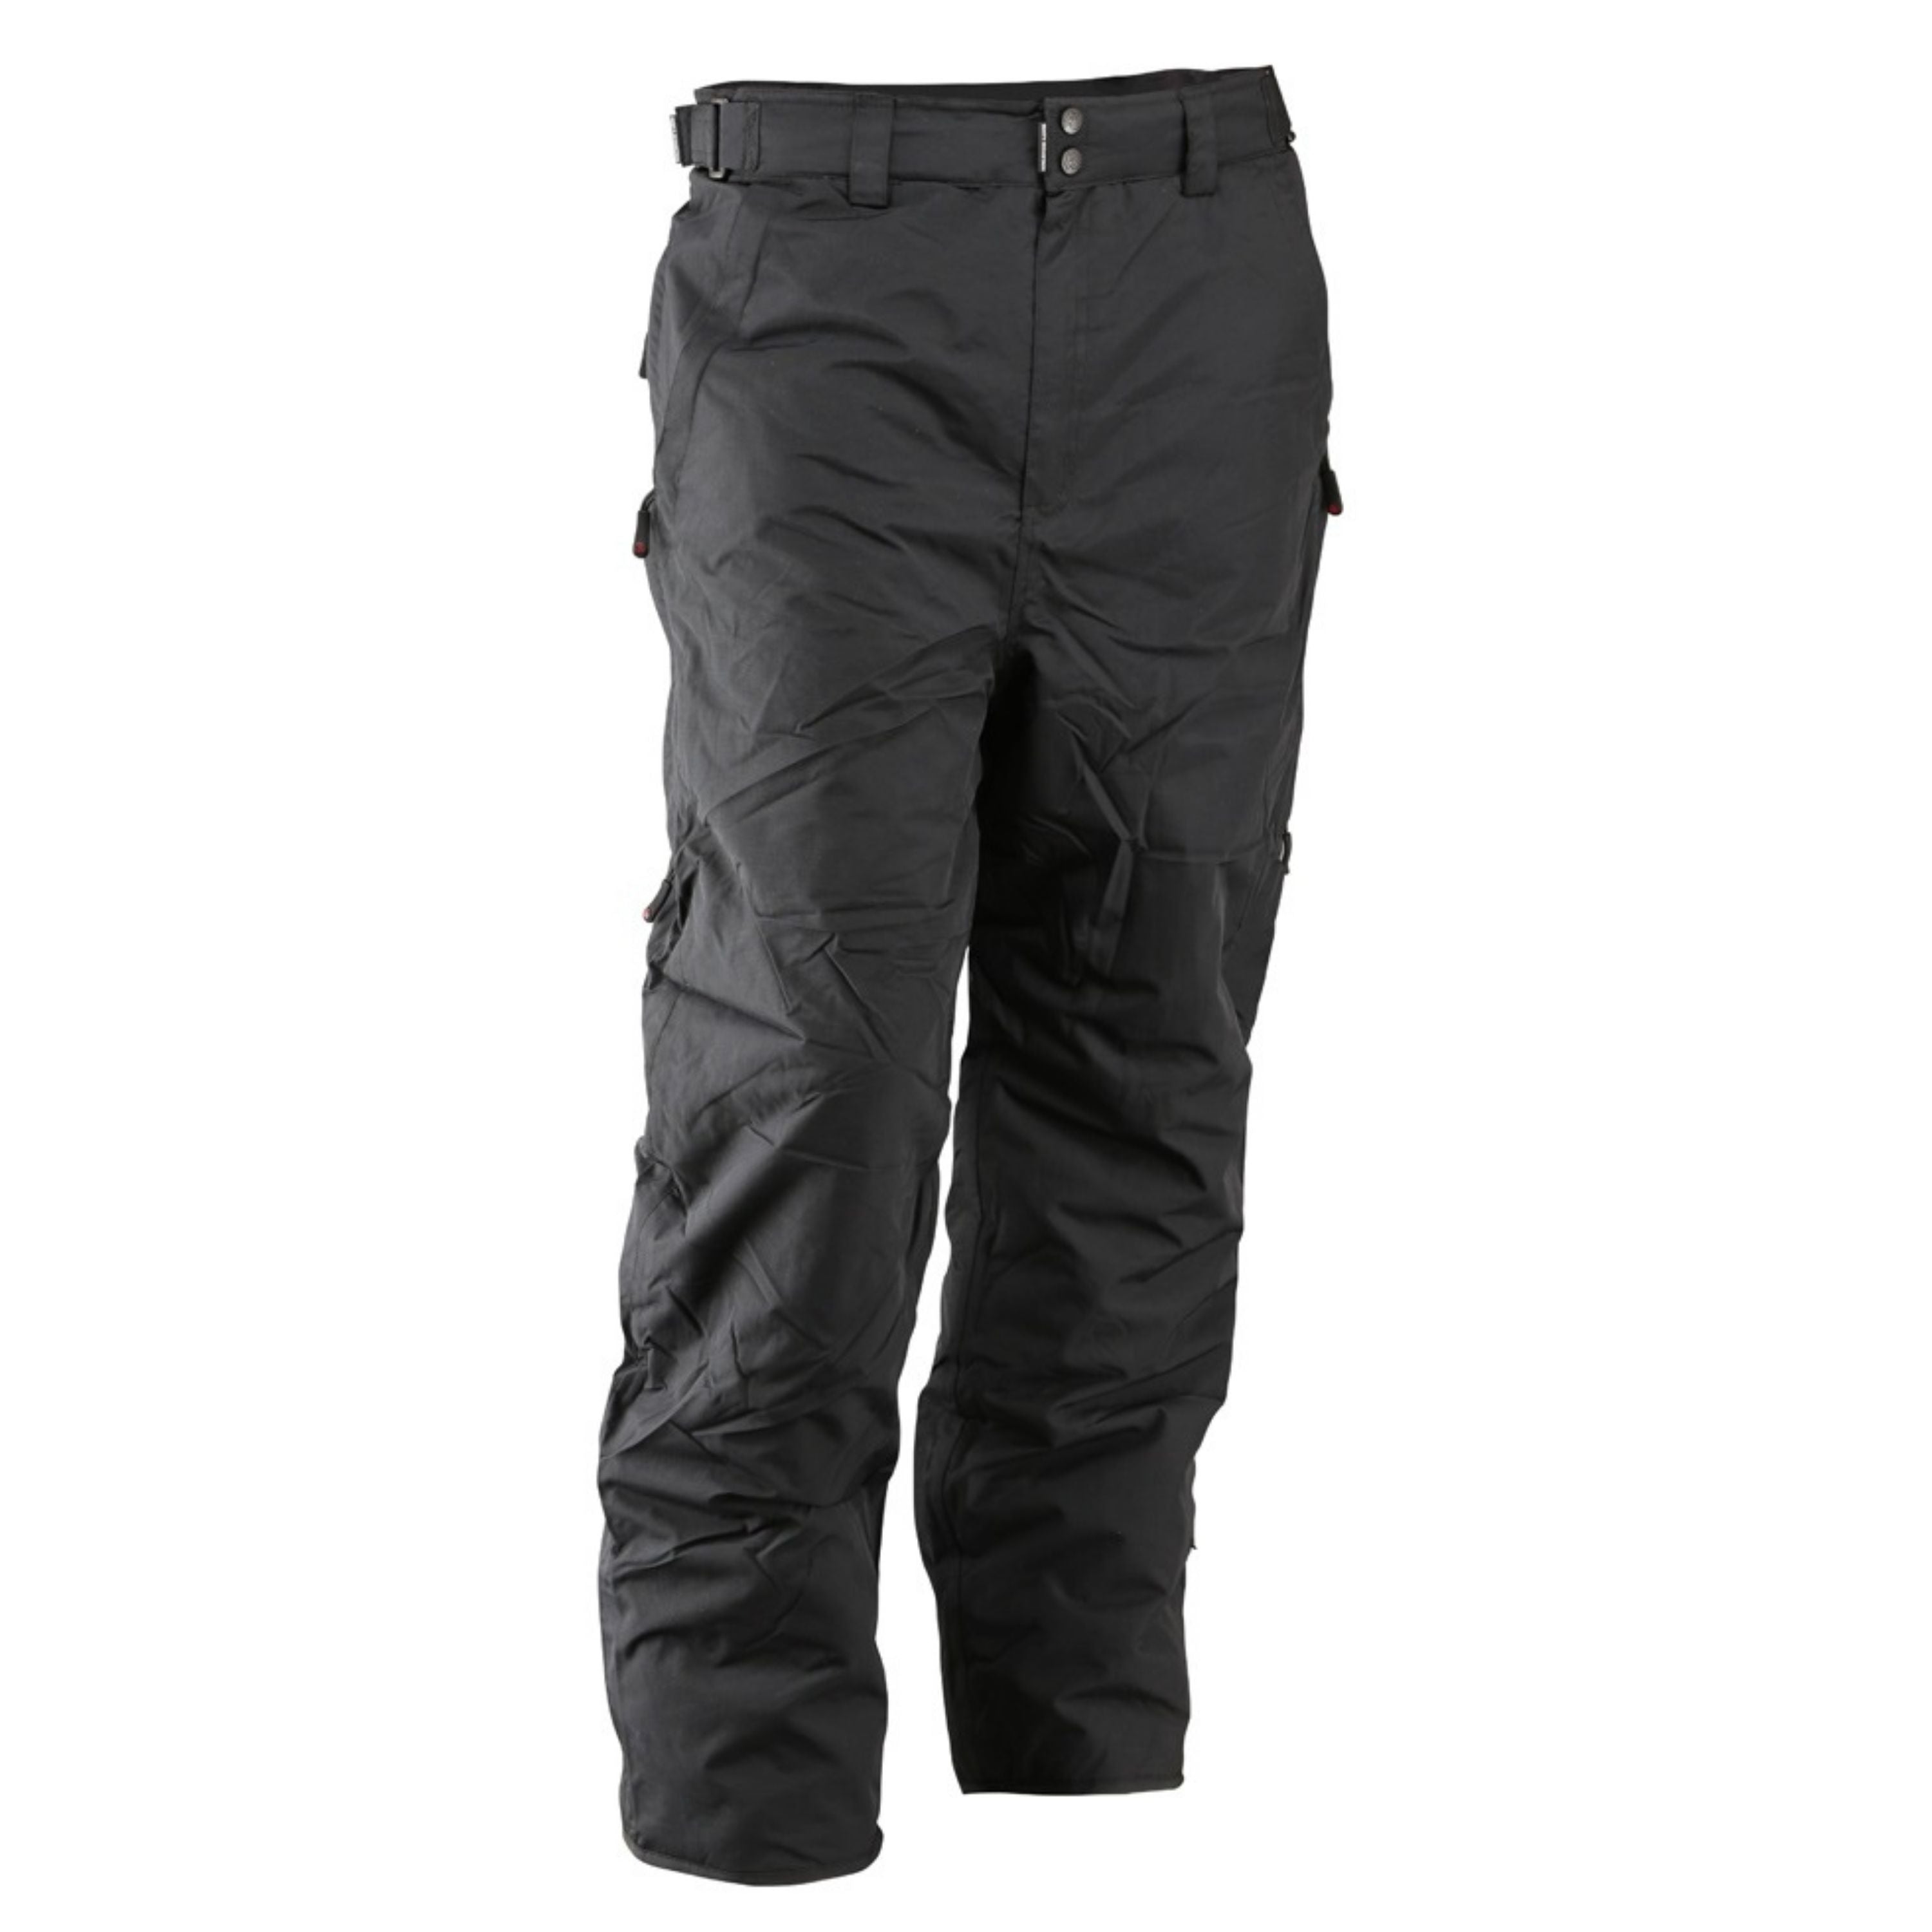 Pantalon d’hiver doublé "Vapor" - Homme||Insulated "Vapor" snow pants - Men’s